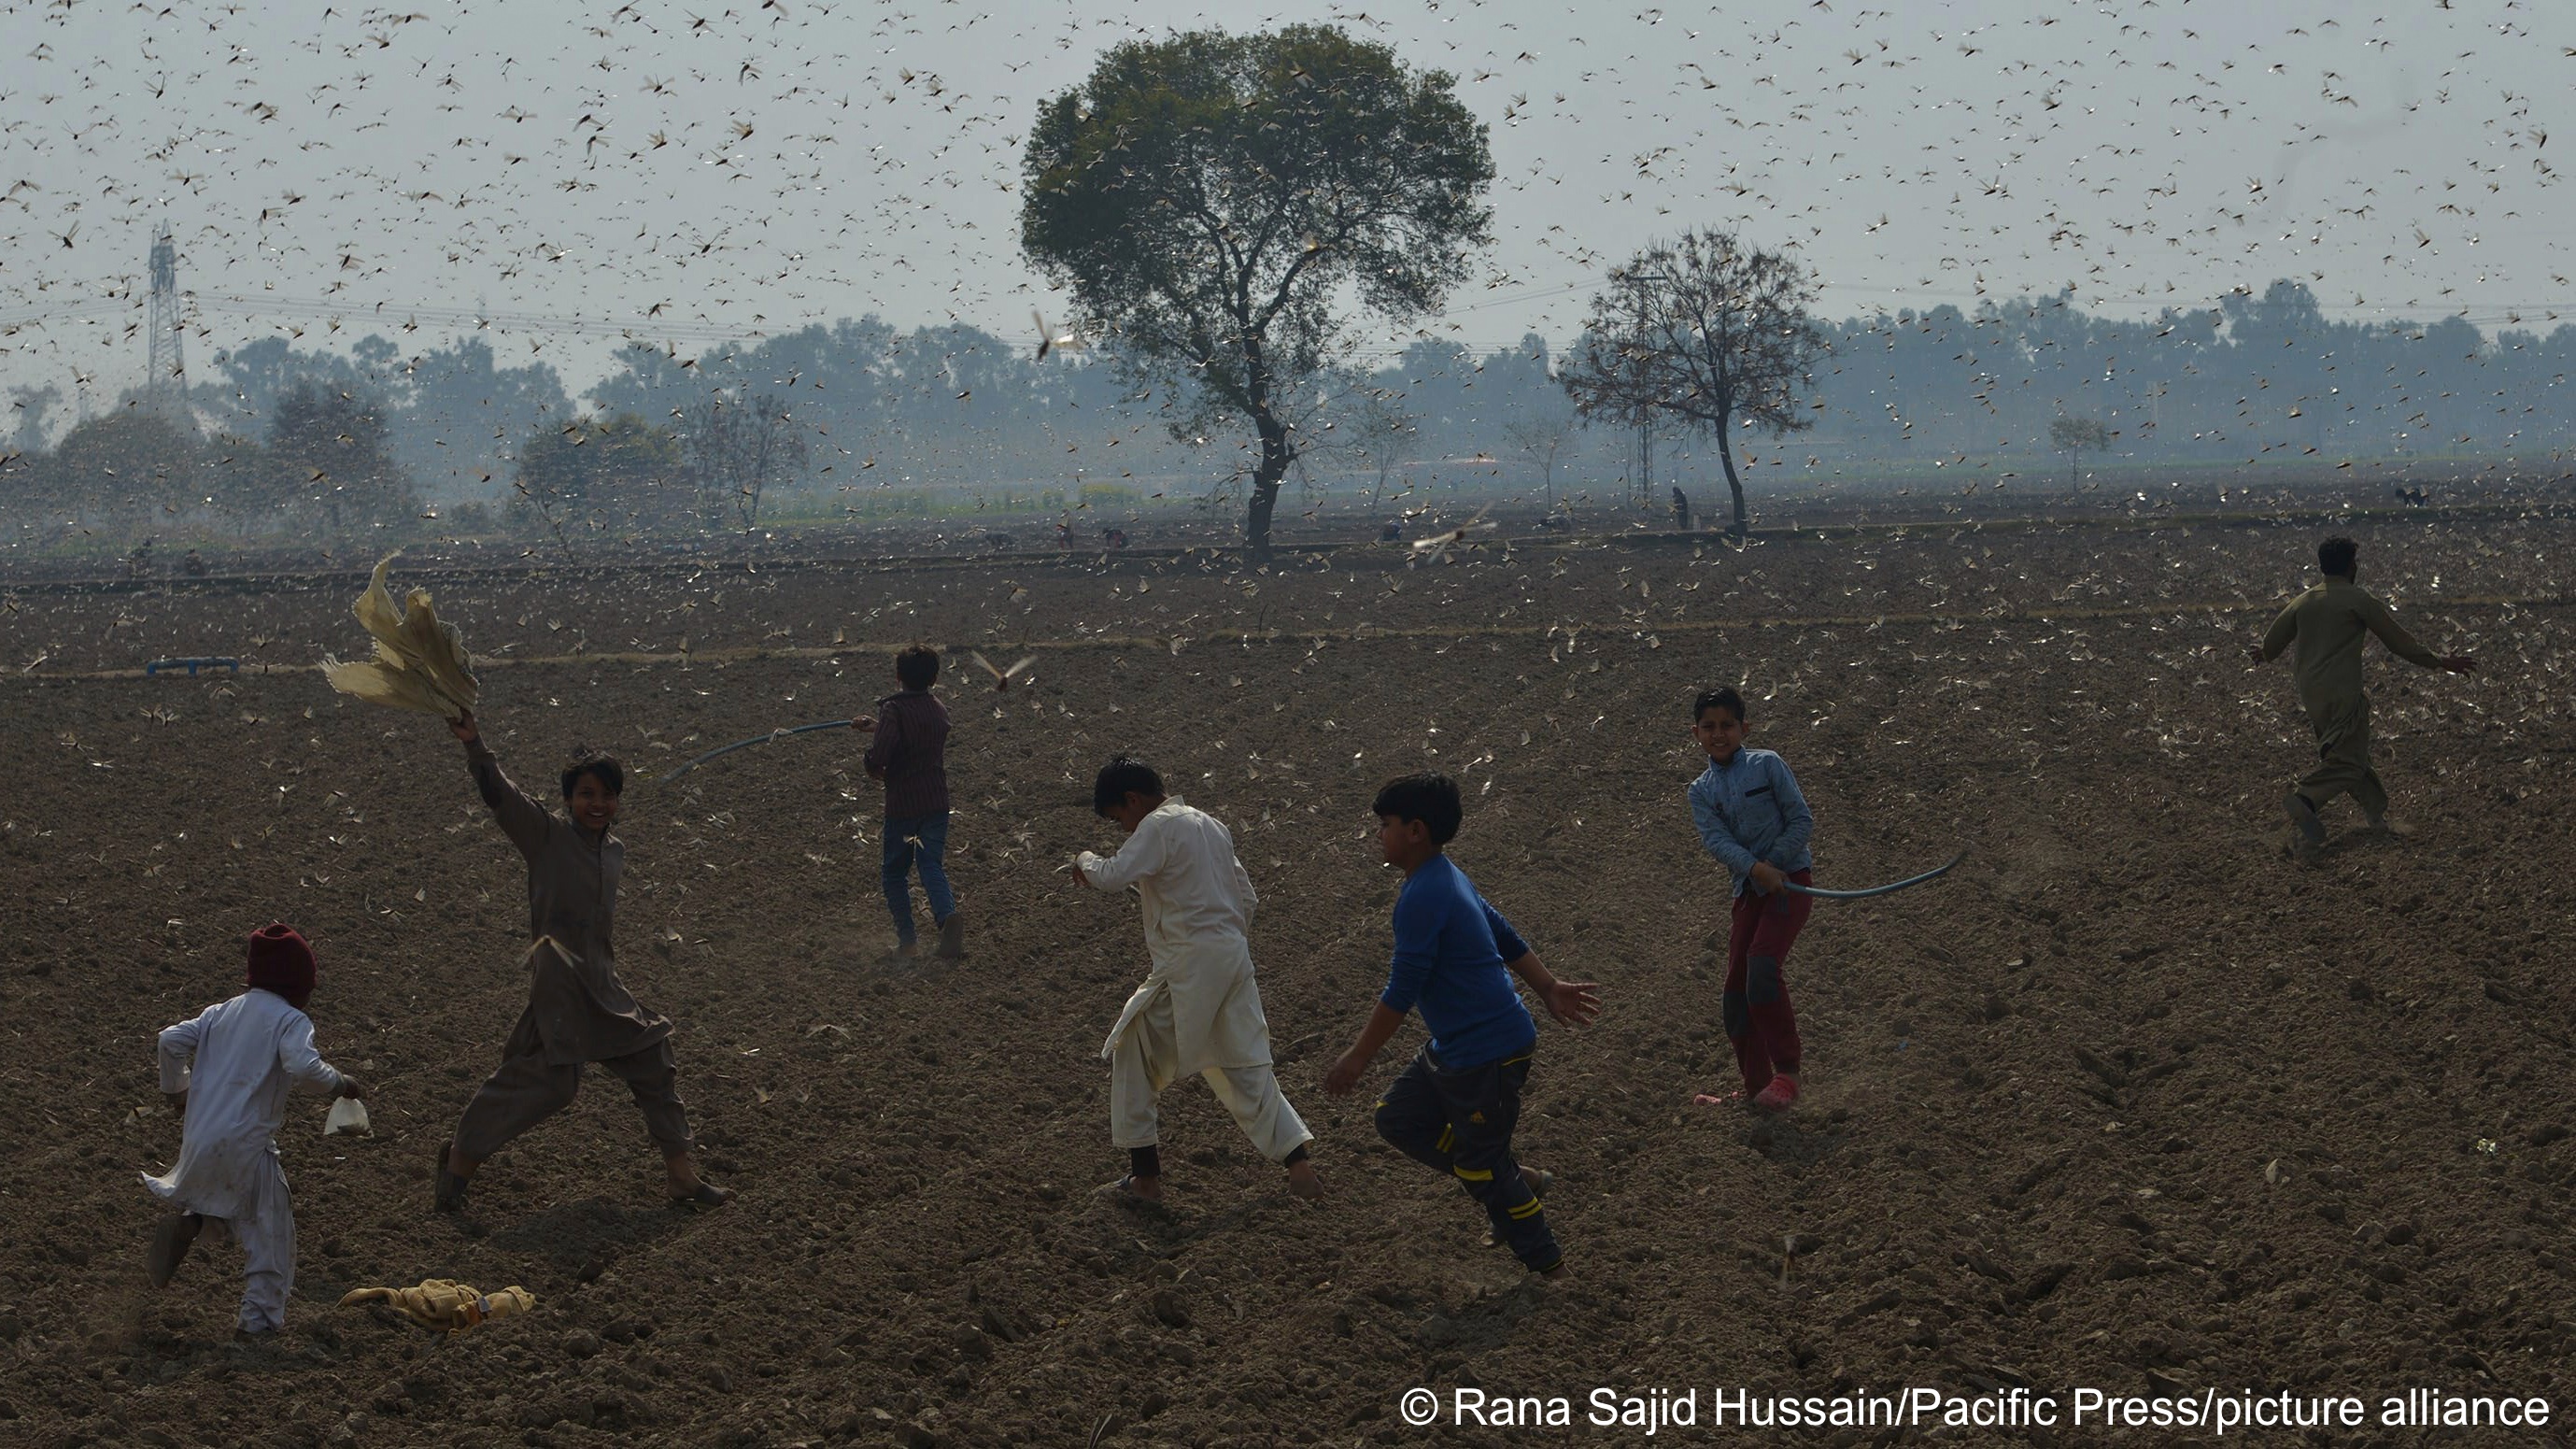 Heuschreckenplagen haben die Probleme noch verstärkt, mit denen der Baumwollanbau in Pakistan zu kämpfen hat. Nach Angaben der  Landwirtschaftsorganisation der Vereinten Nationen (FAO) mussten in 2022 mehr als 8000 Hektar Land mit Pestiziden behandelt werden, um Heuschrecken abzuwehren.Heuschreckenplagen haben die Probleme noch verstärkt, mit denen der Baumwollanbau in Pakistan zu kämpfen hat. Nach Angaben der  Landwirtschaftsorganisation der Vereinten Nationen (FAO) mussten in 2022 mehr als 8000 Hektar Land mit Pestiziden behandelt werden, um Heuschrecken abzuwehren.Heuschreckenplagen haben die ProbleKinder versuchen Heuschrecken von einem Baumwollfeld in Chak-No 35/2R, Pakistan, zu vertreiben (Foto: picture-alliance)